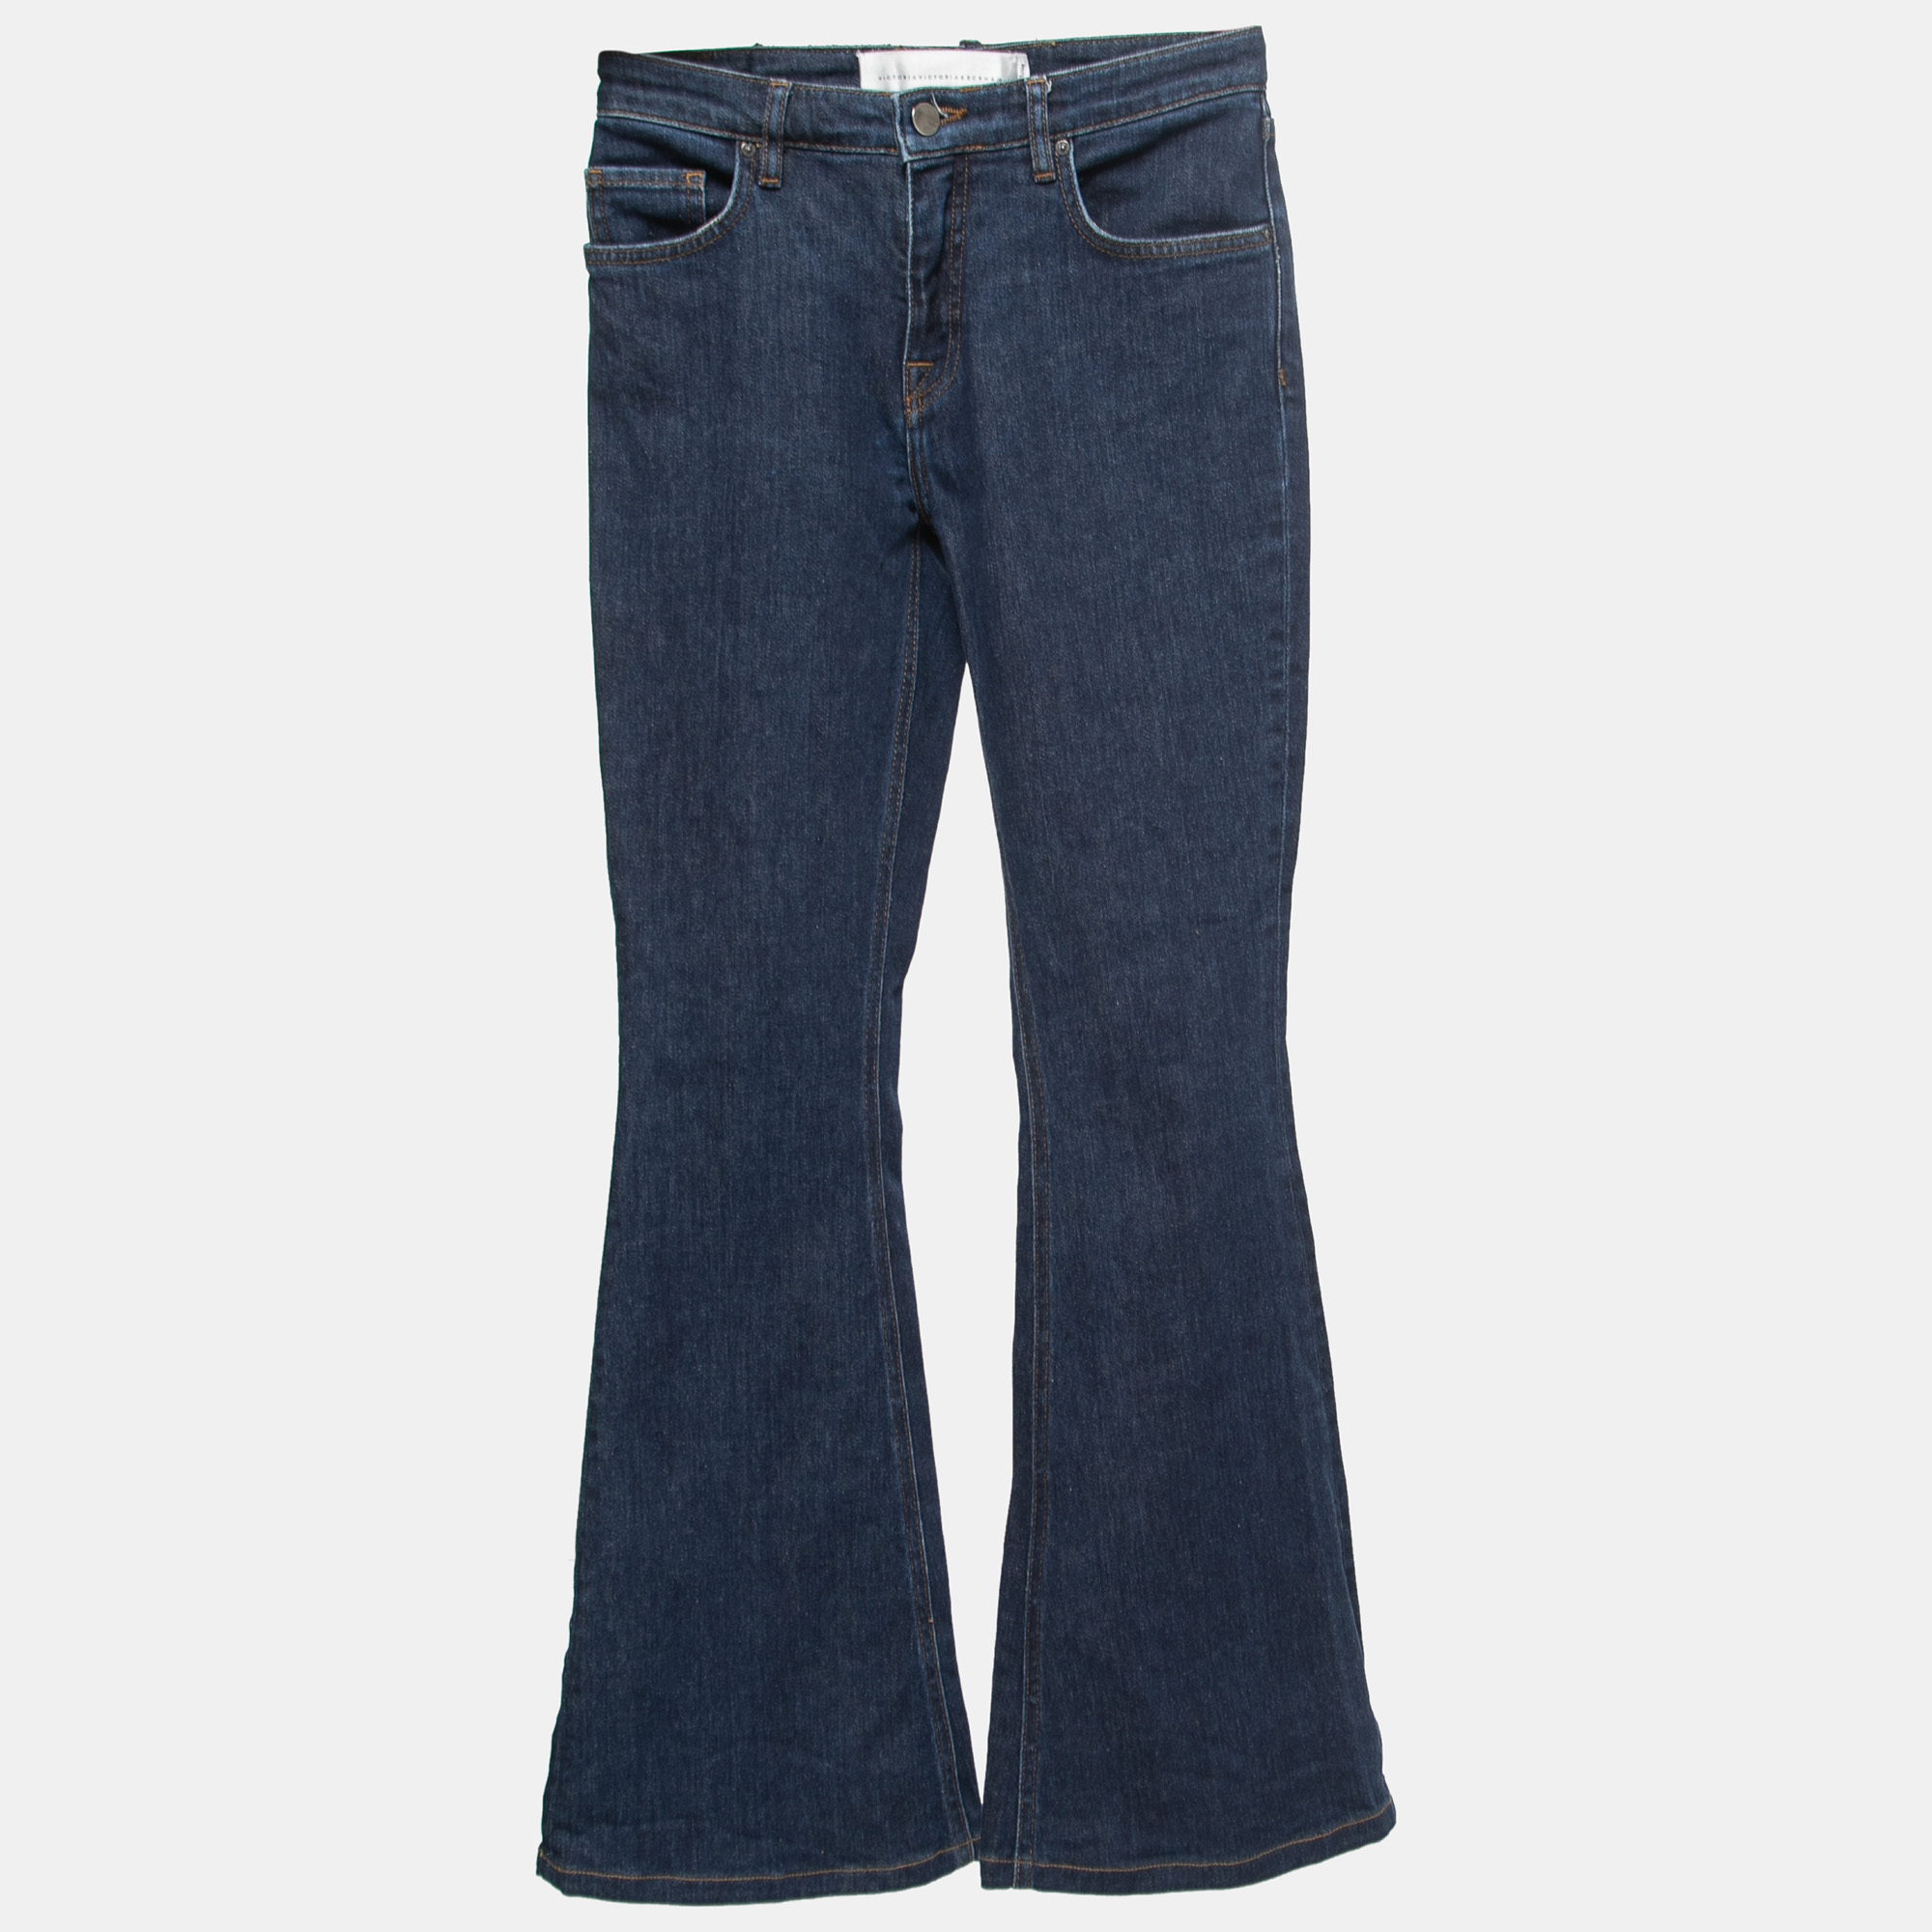 

Victoria Victoria Beckham Blue Denim Flared Jeans  Waist 25